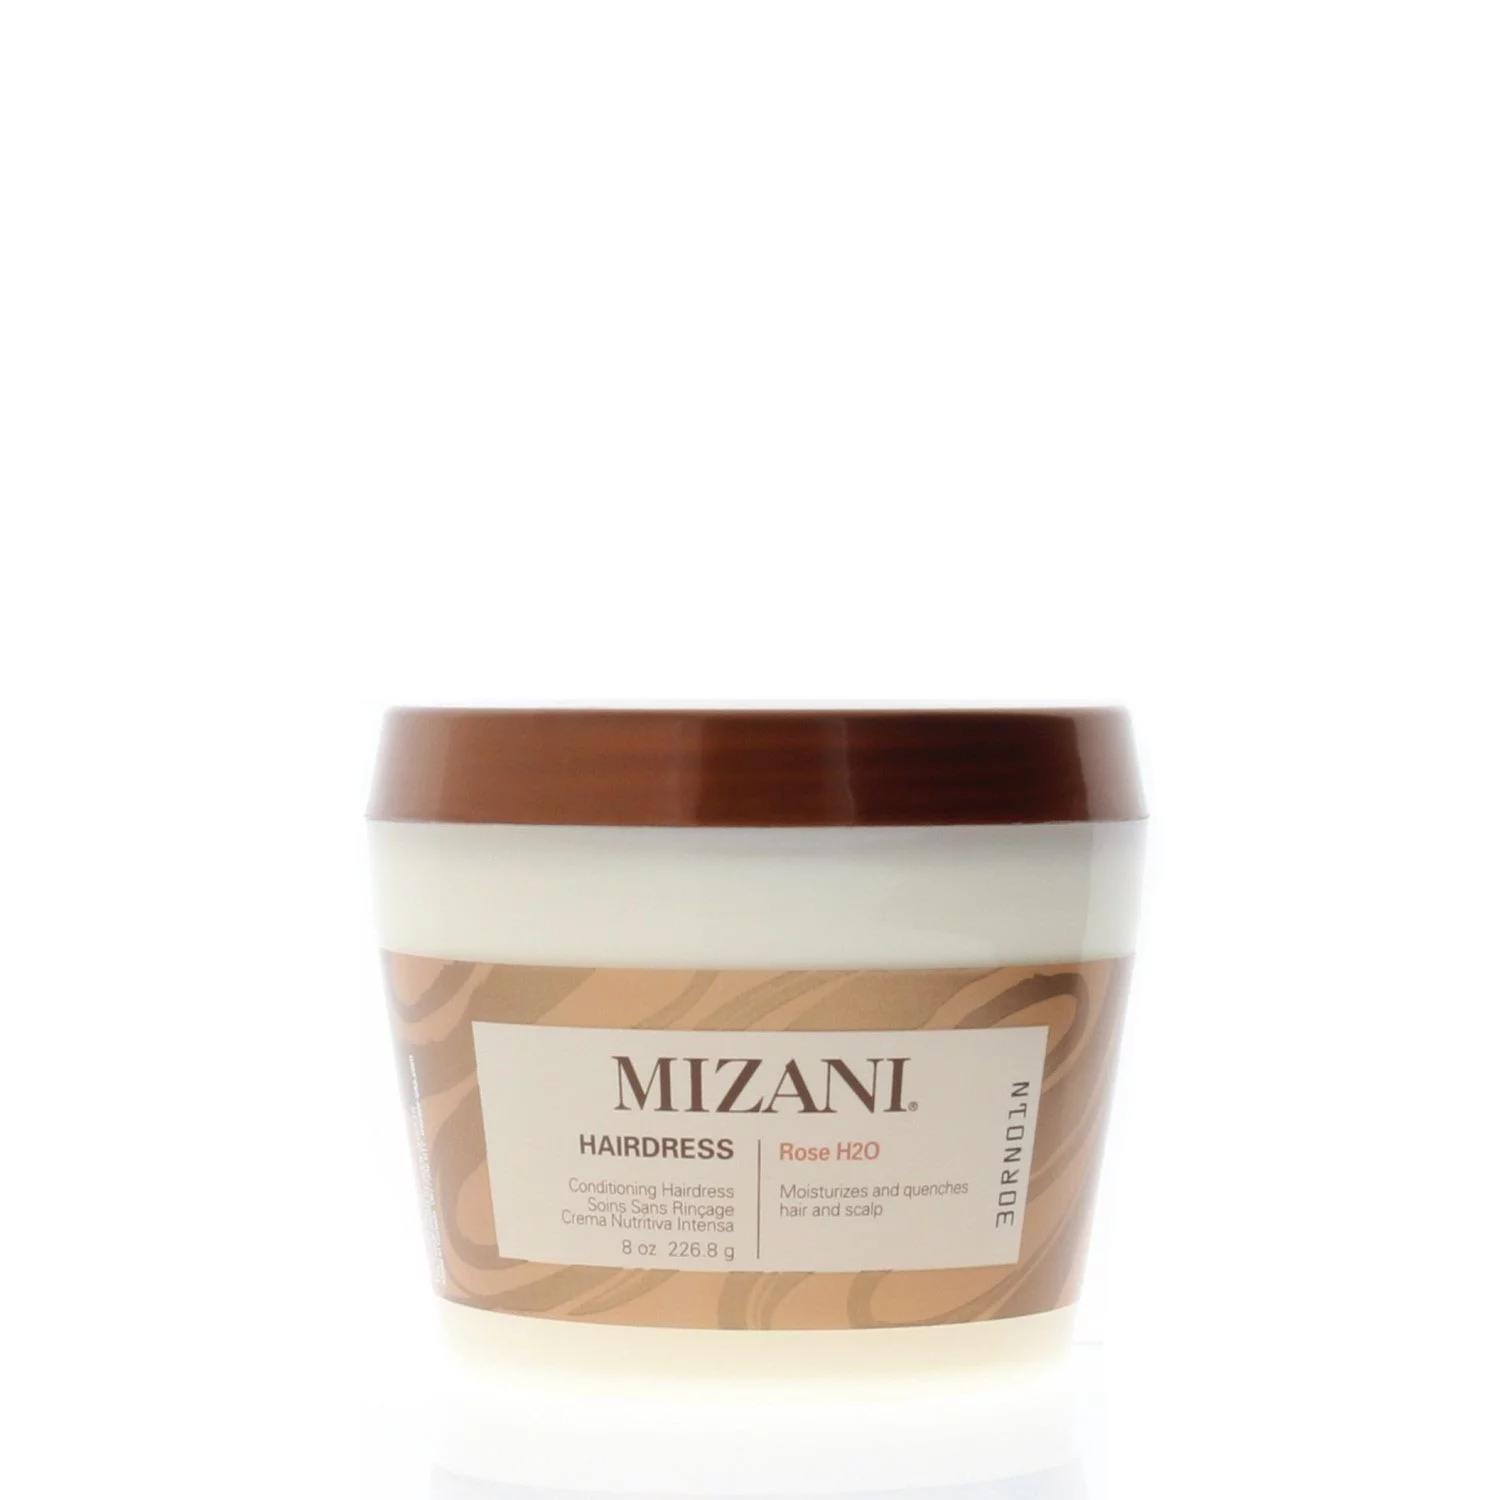 Mizani Rose H2O Conditioning Hairdress, 8 oz